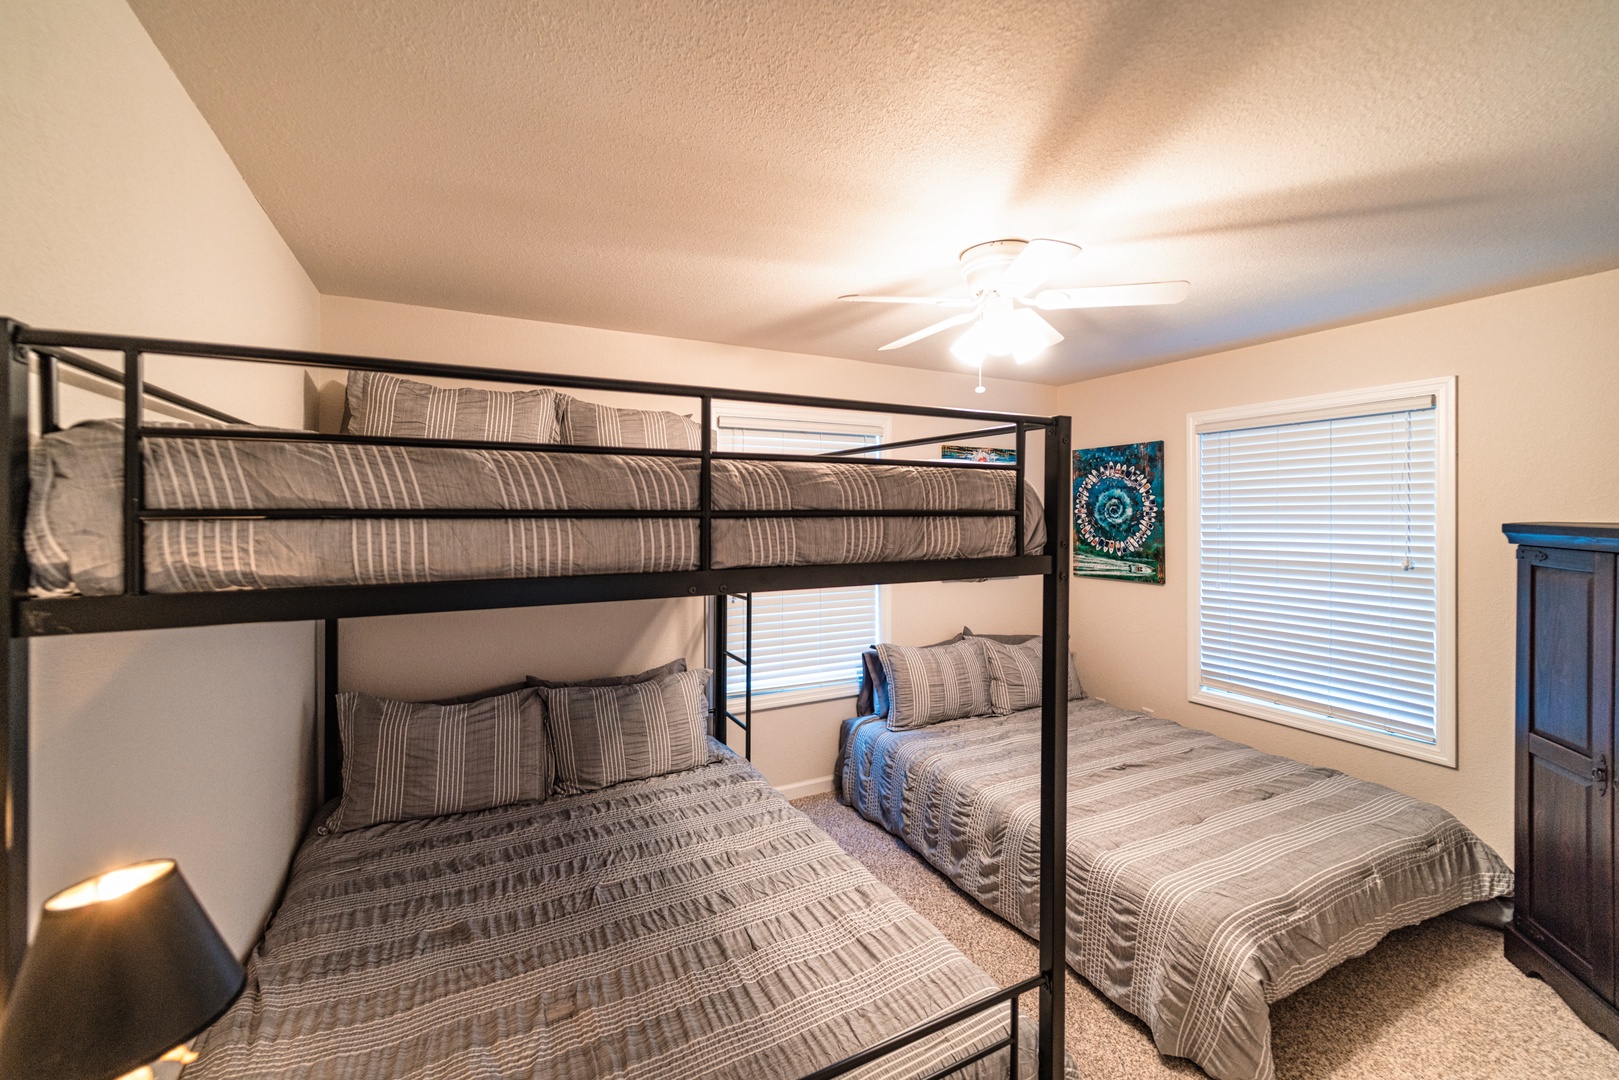 The final bedroom includes queen-over-queen bunks & a standalone queen